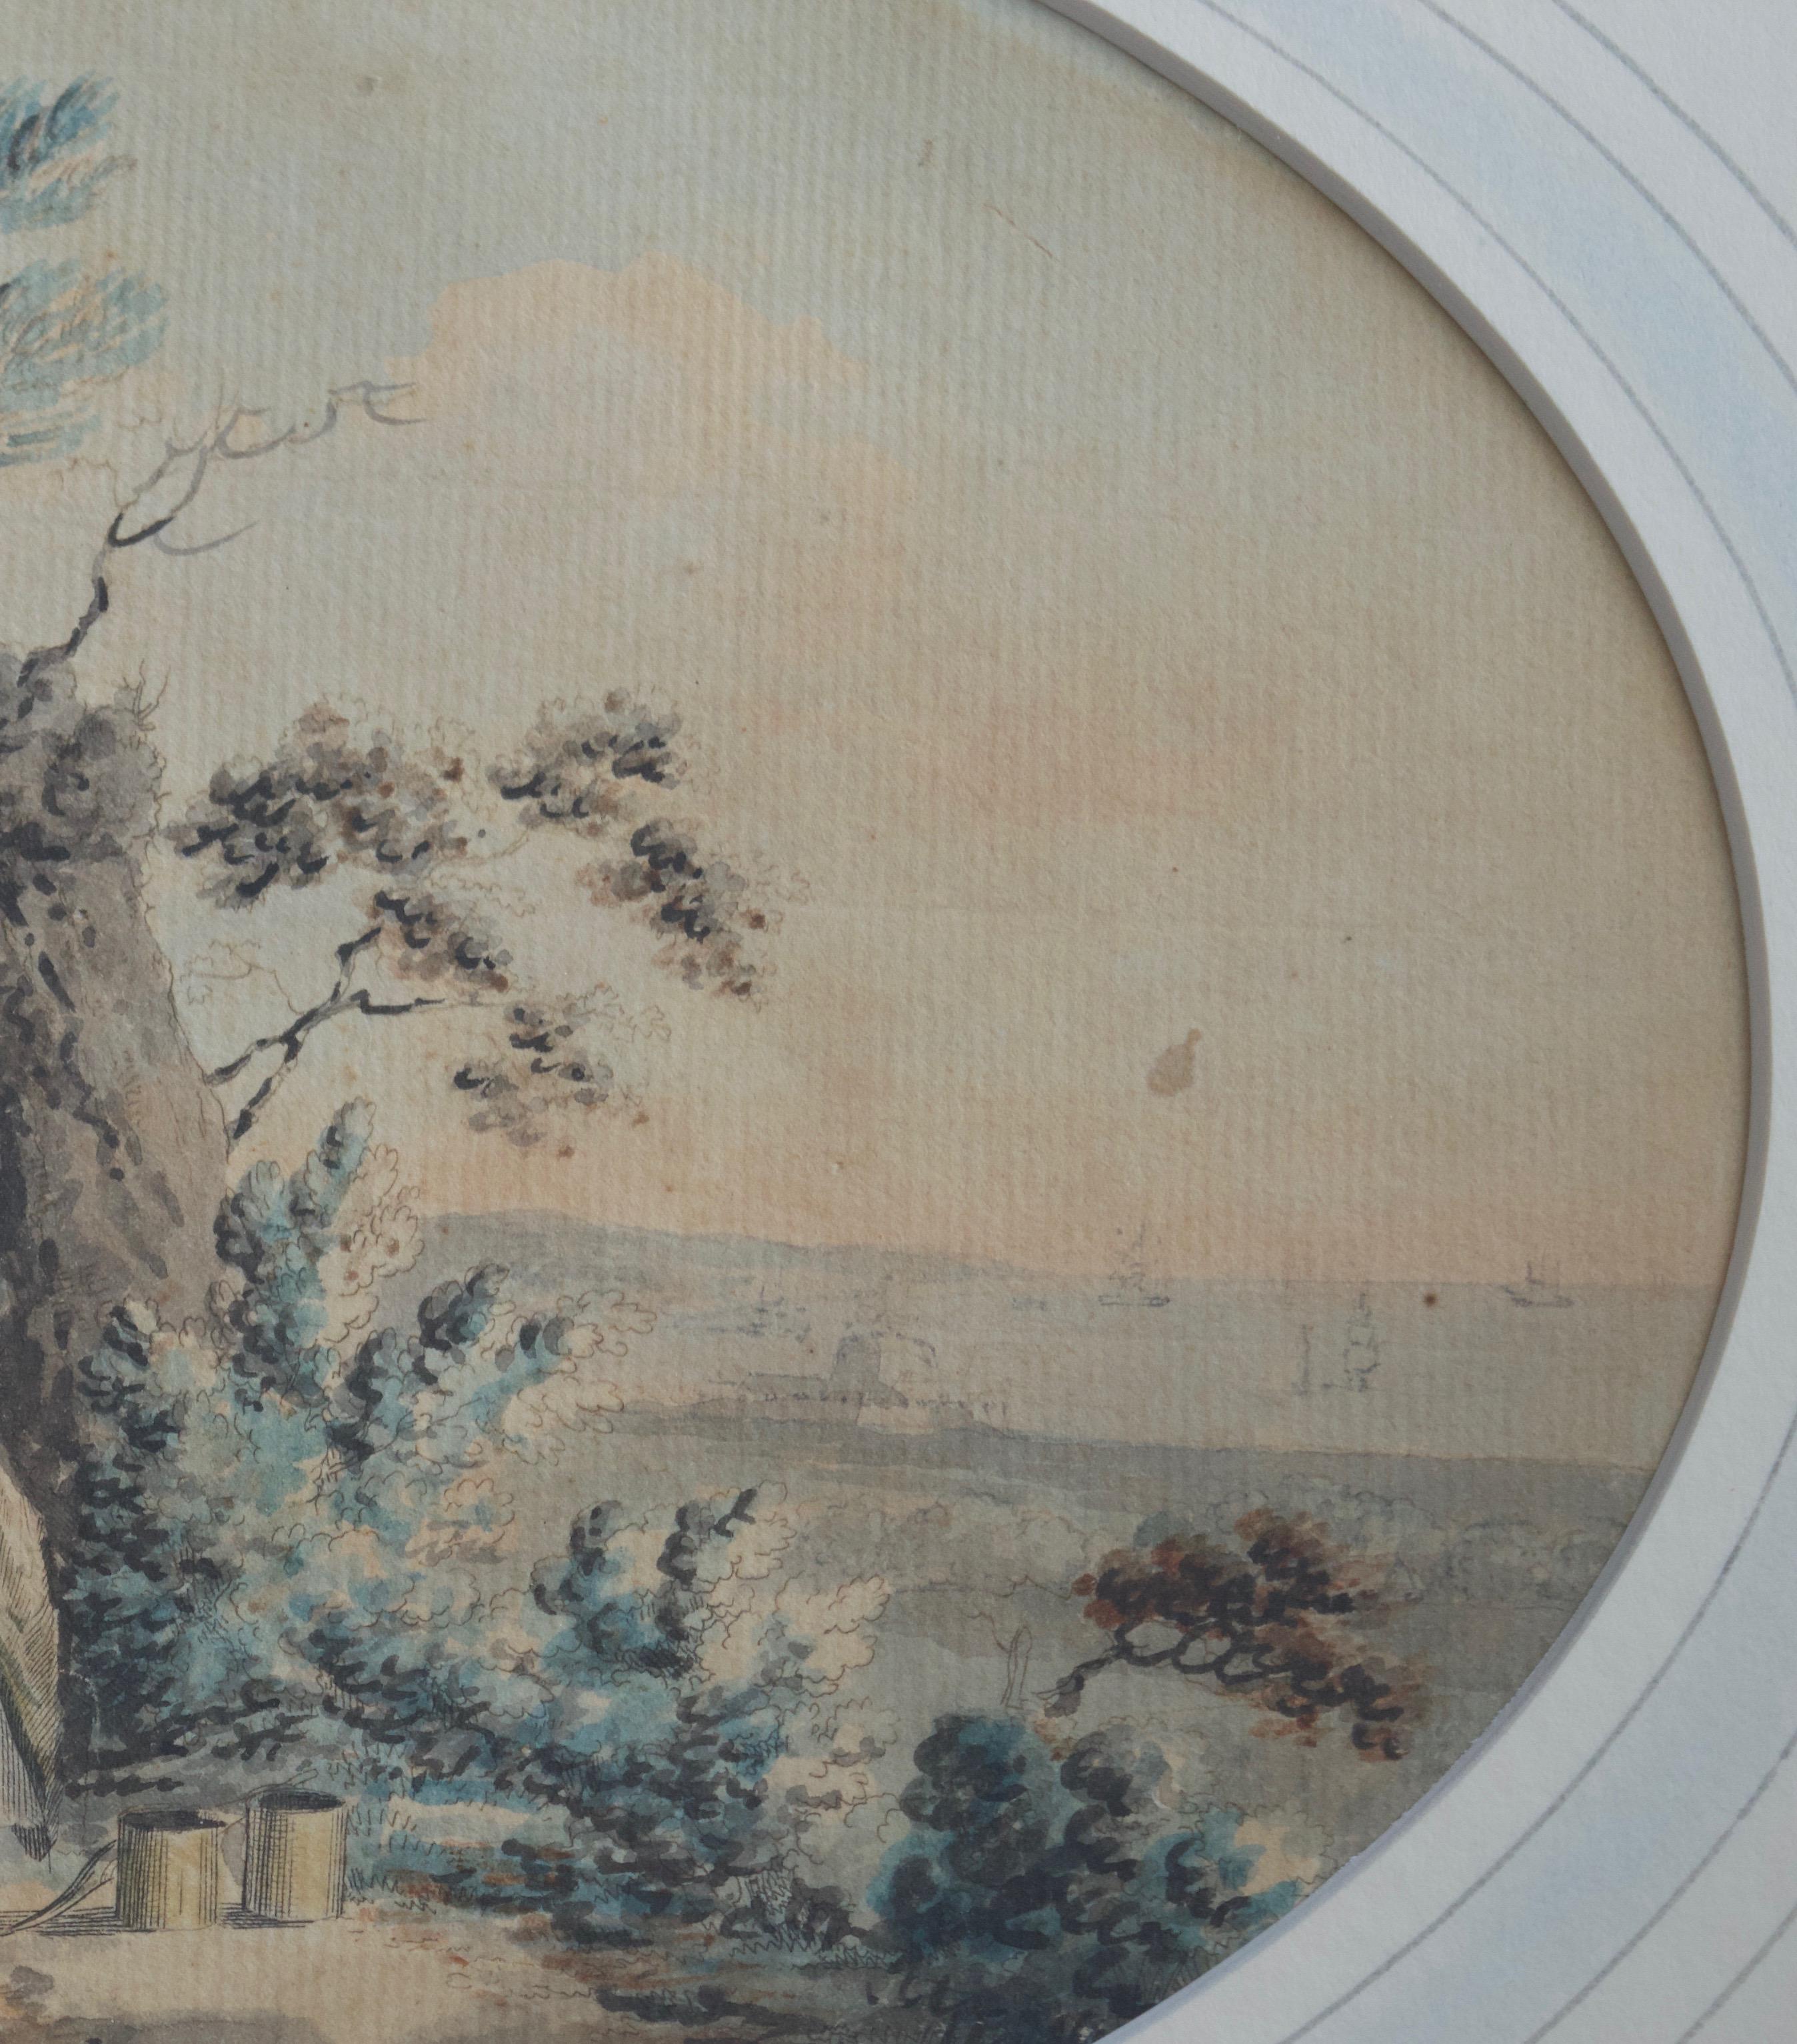 Eine reizvolle rustikale Szene aus der Zeit um 1800, in der der Seemann zu seiner dankbaren Frau und der häuslichen Idylle seines Landhauses zurückkehrt. In der Ferne ist der Hafen mit den Segelschiffen zu sehen, die die Besatzung hin- und